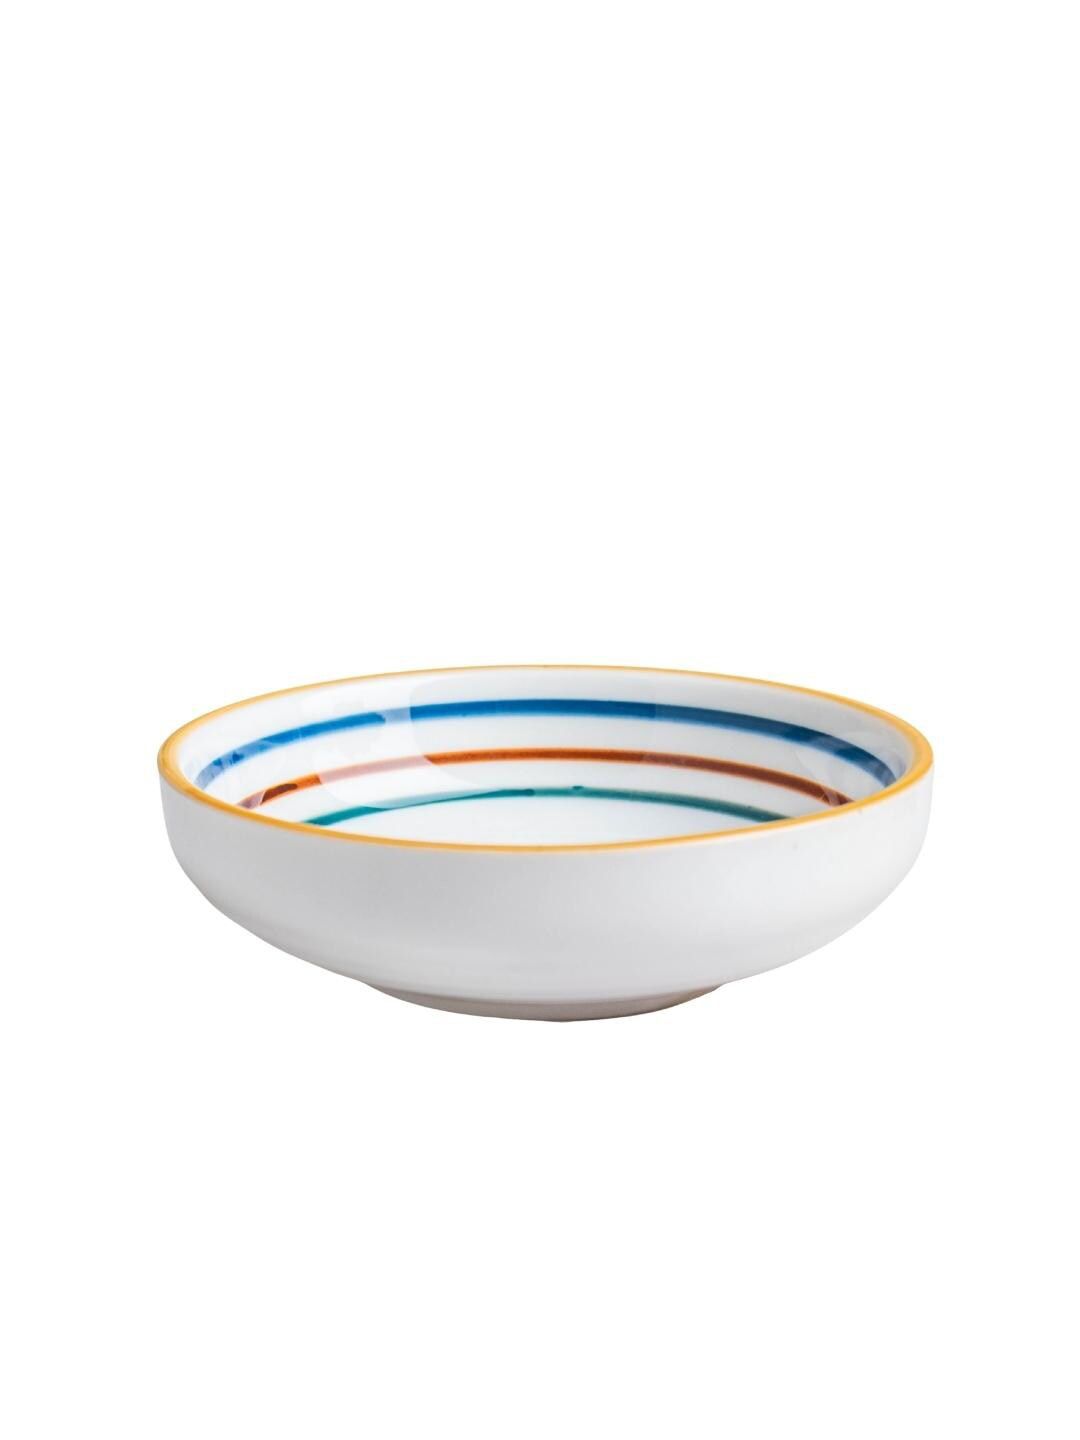 Nestasia White & Blue Printed Ceramic Glossy Bowl Price in India